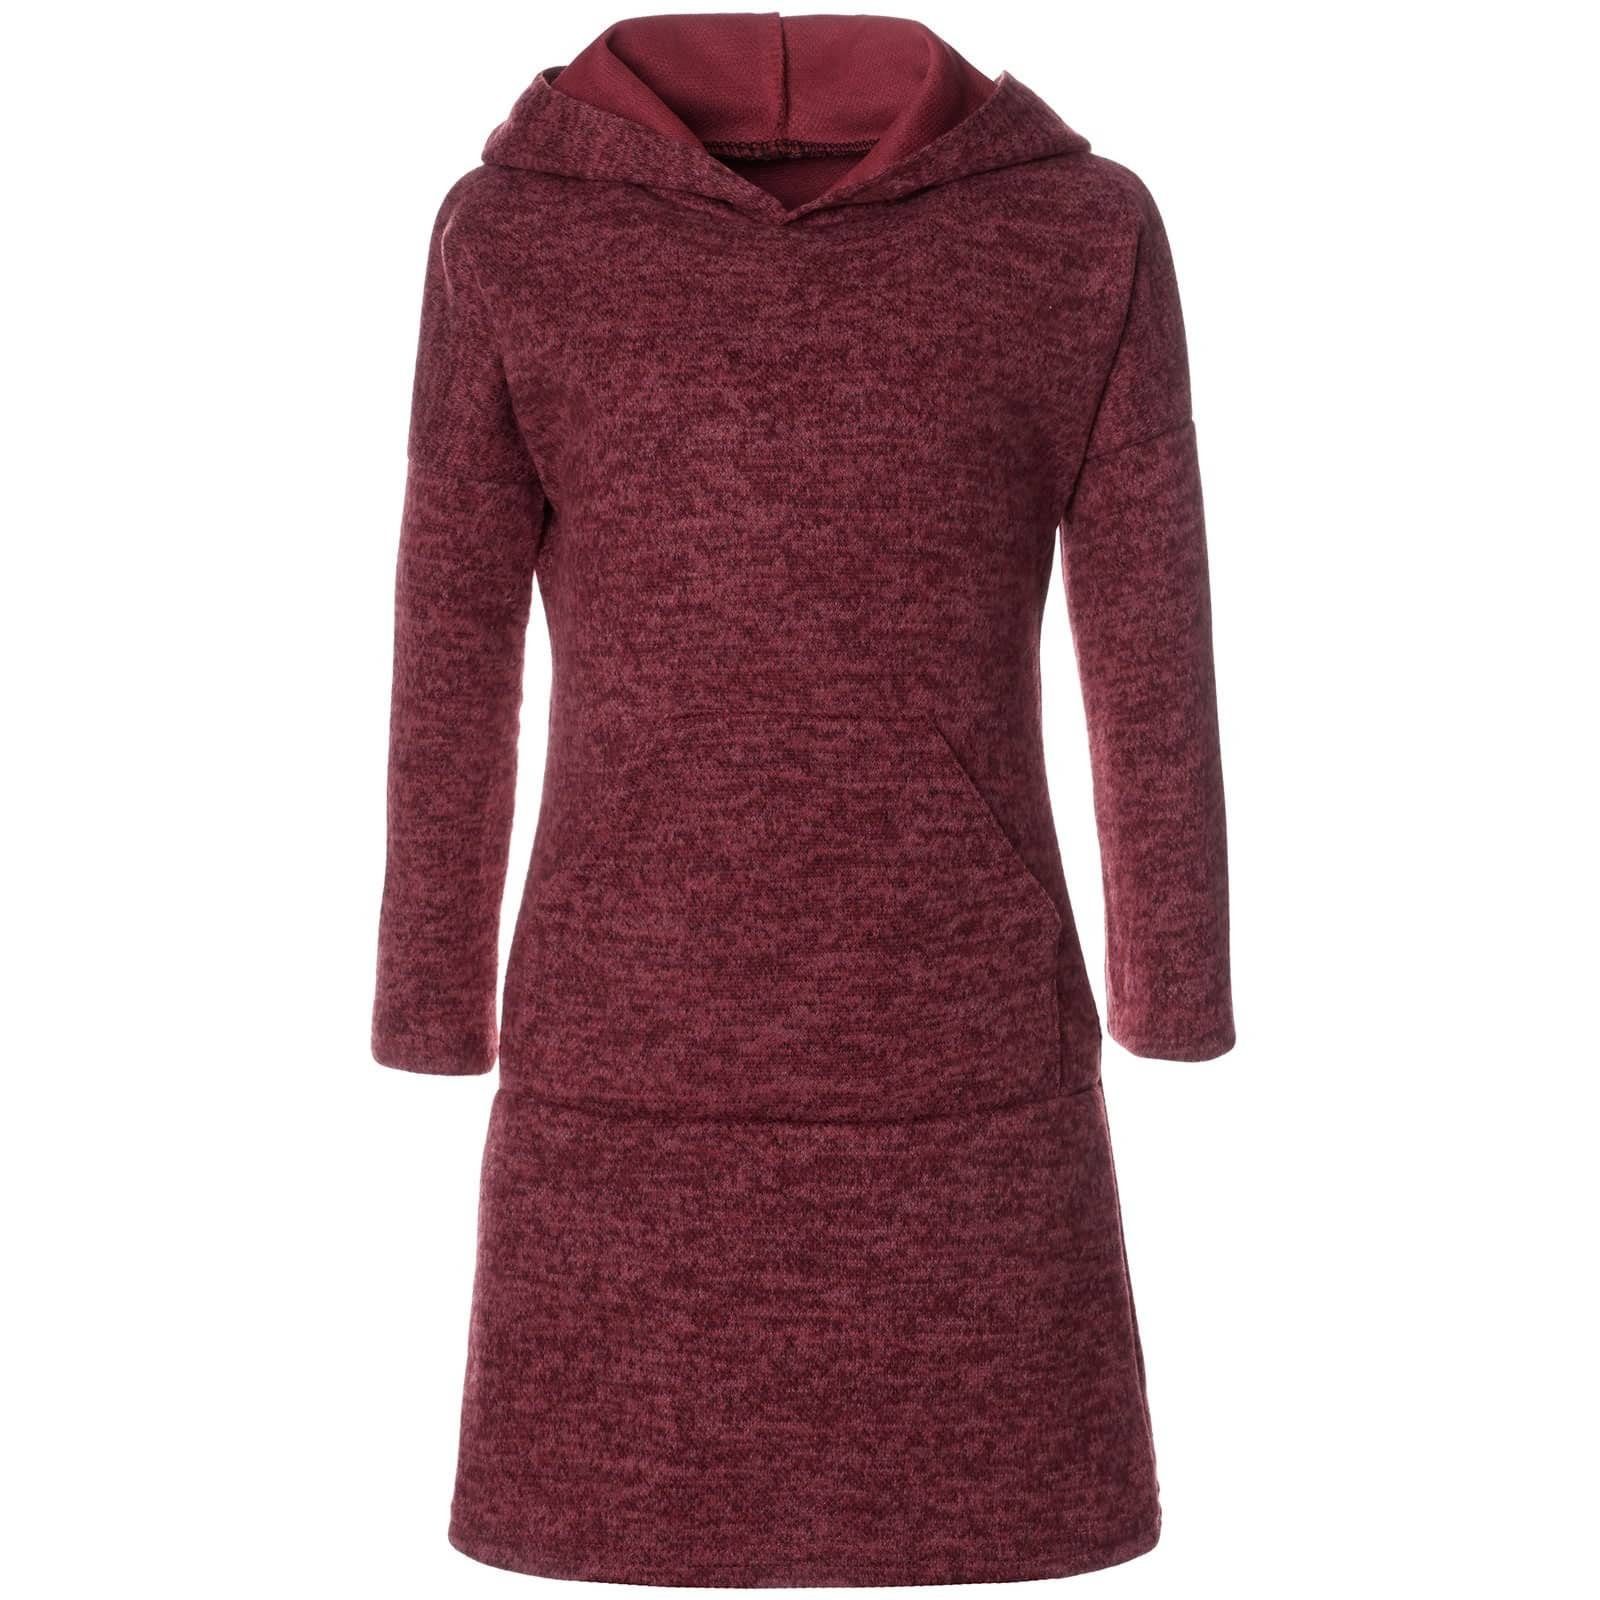 BEZLIT Blusenkleid »Mädchen Pullover-Kleid mit Kapuze« (1-tlg)  Kängurutasche online kaufen | OTTO